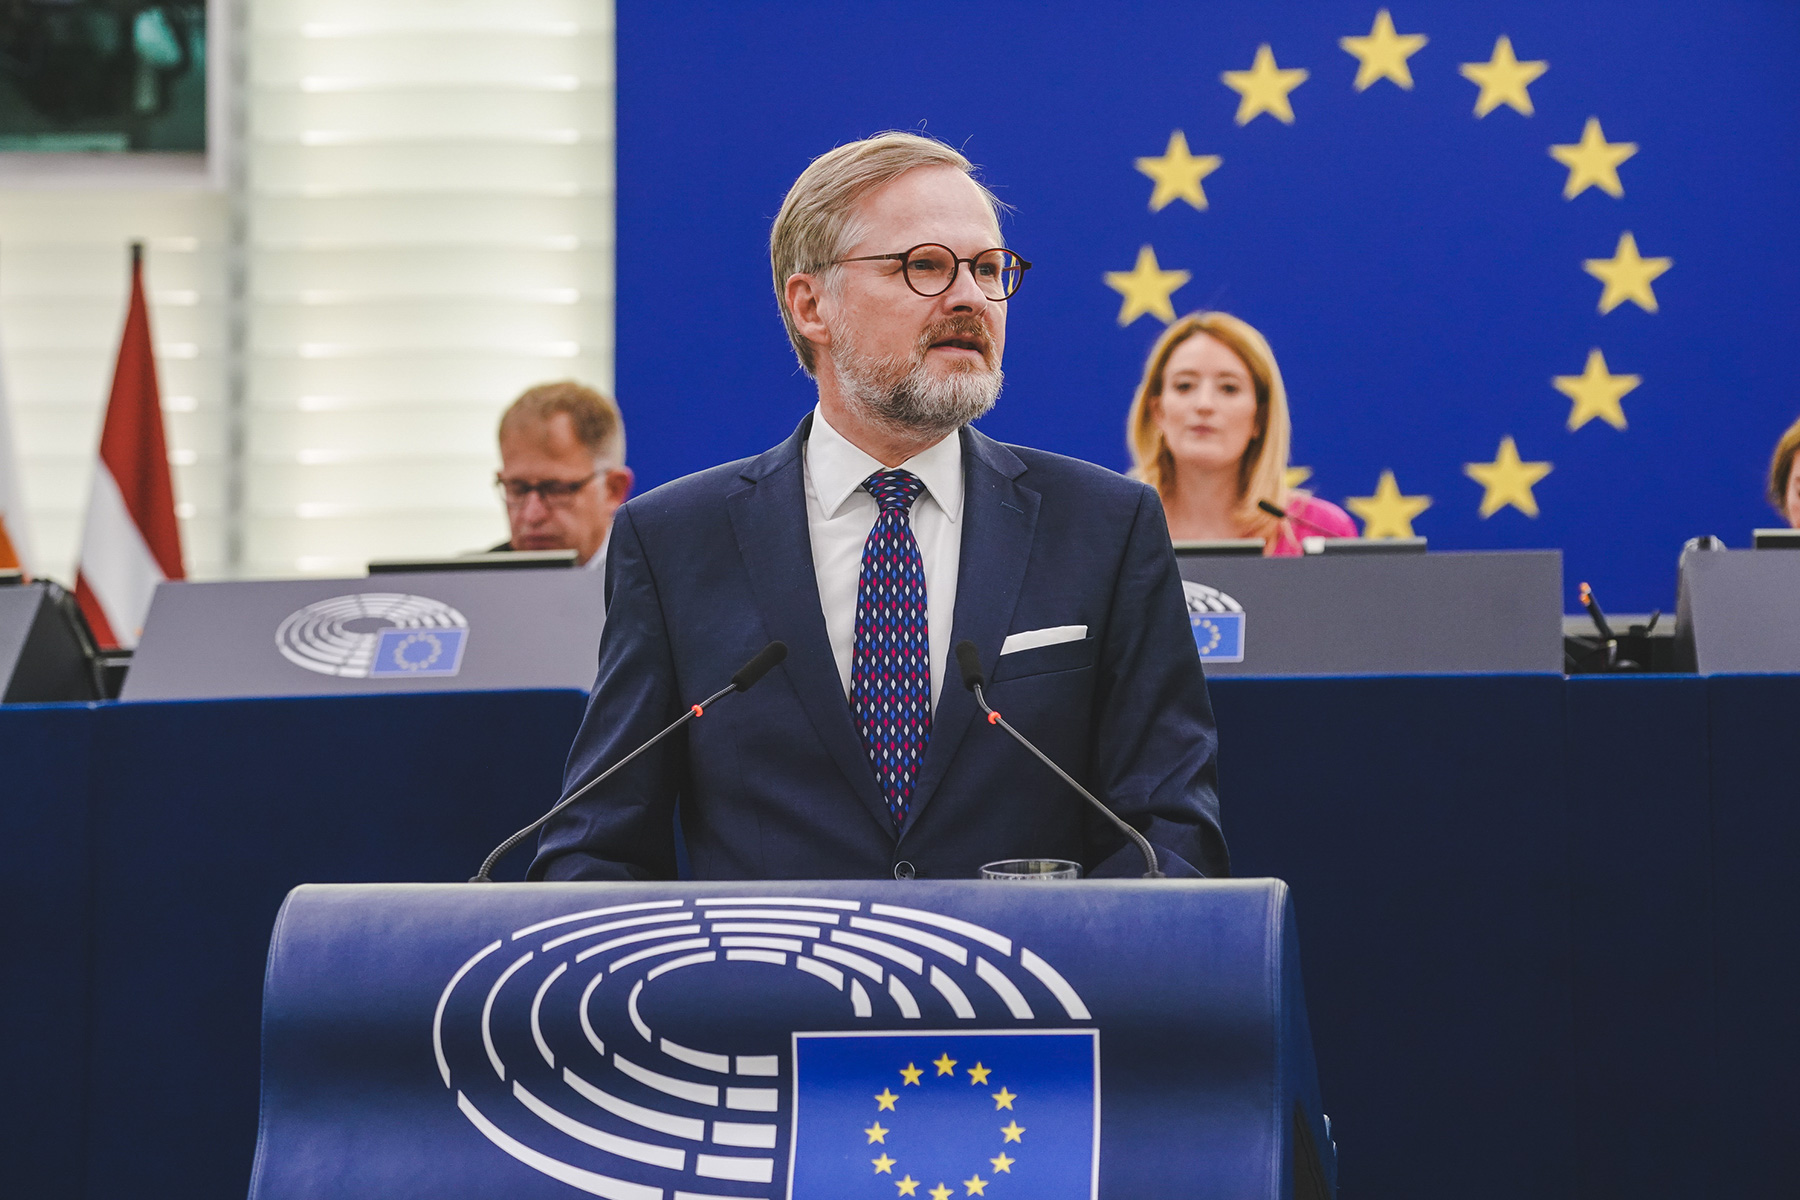 Los eurodiputados debaten las prioridades de la Presidencia checa con el Primer Ministro Fiala |  Noticias |  Parlamento Europeo